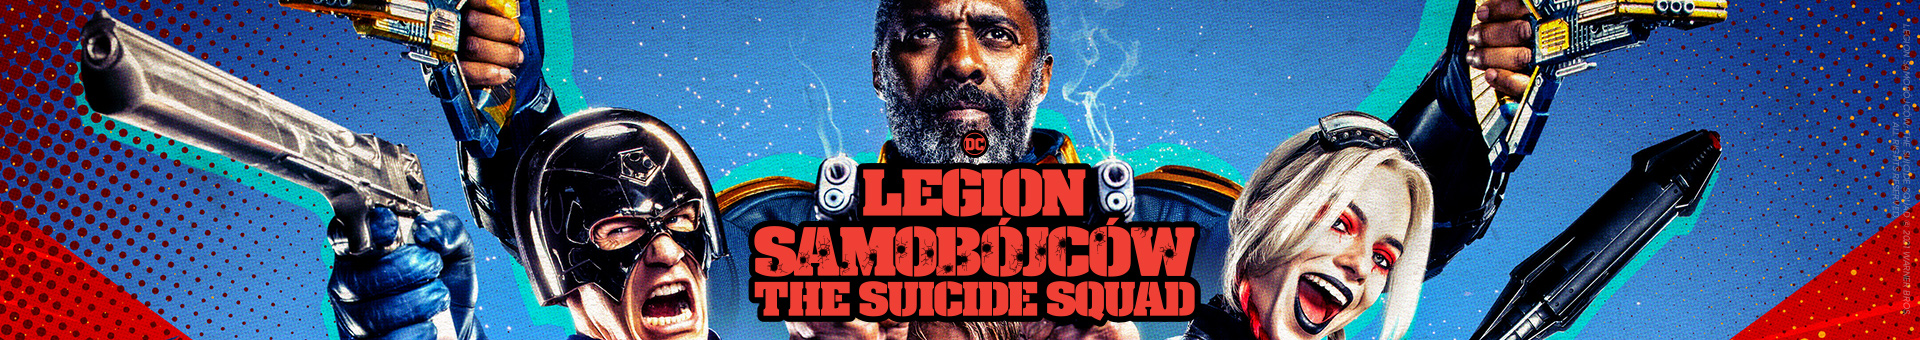 Grafika promocyjna do filmu Legion Samobójców